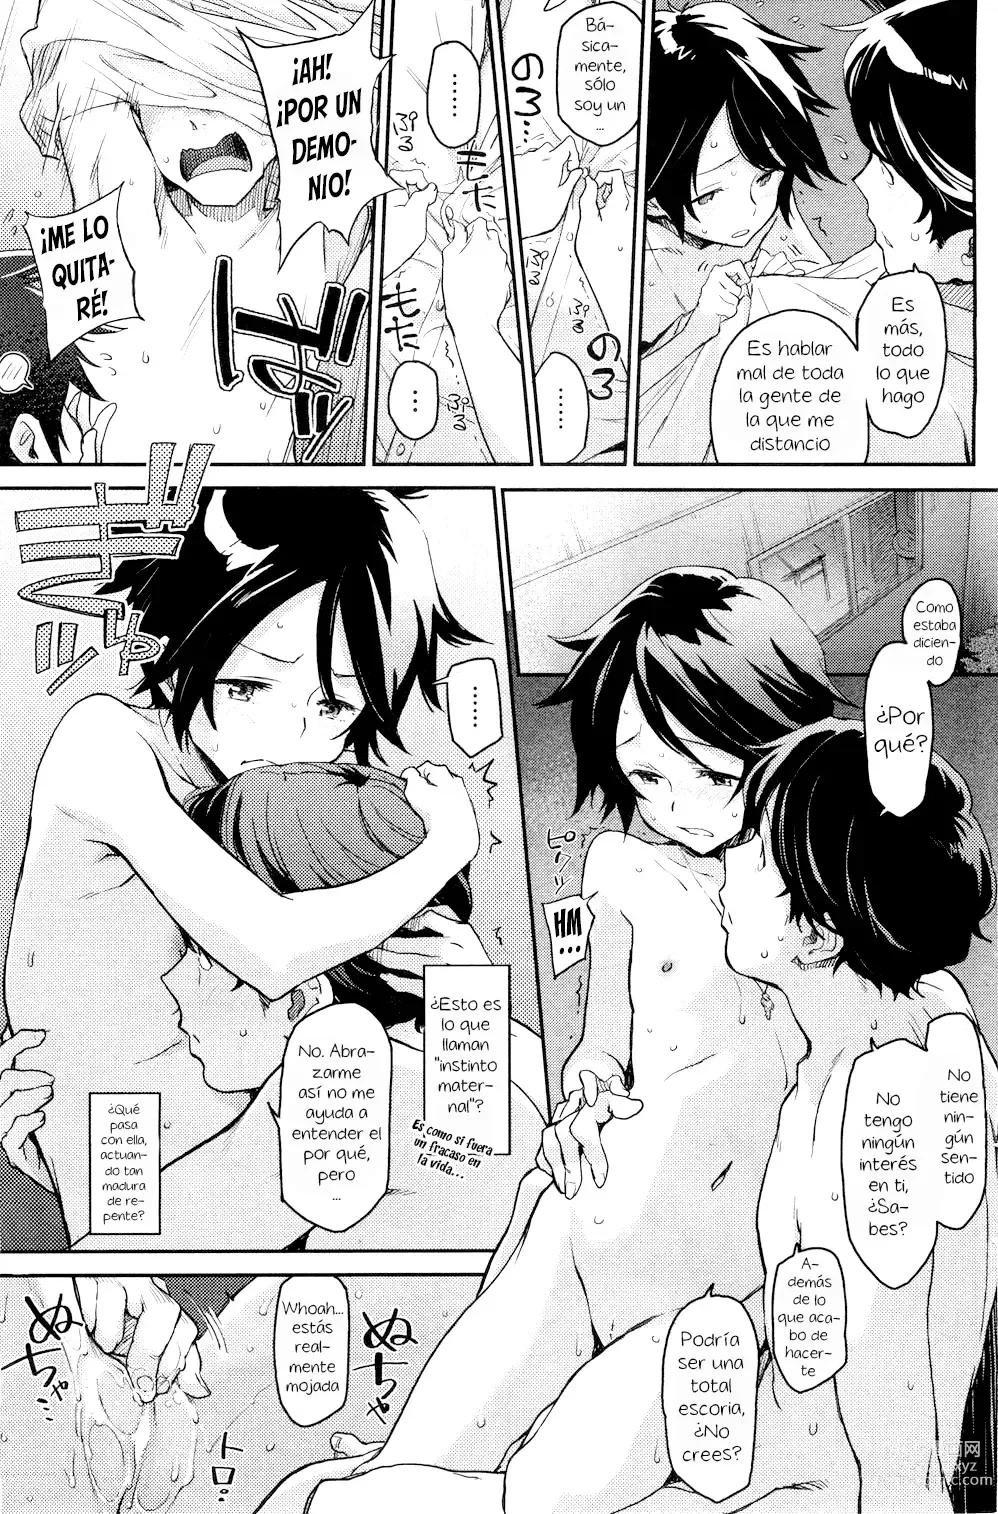 Page 13 of manga Spare Key